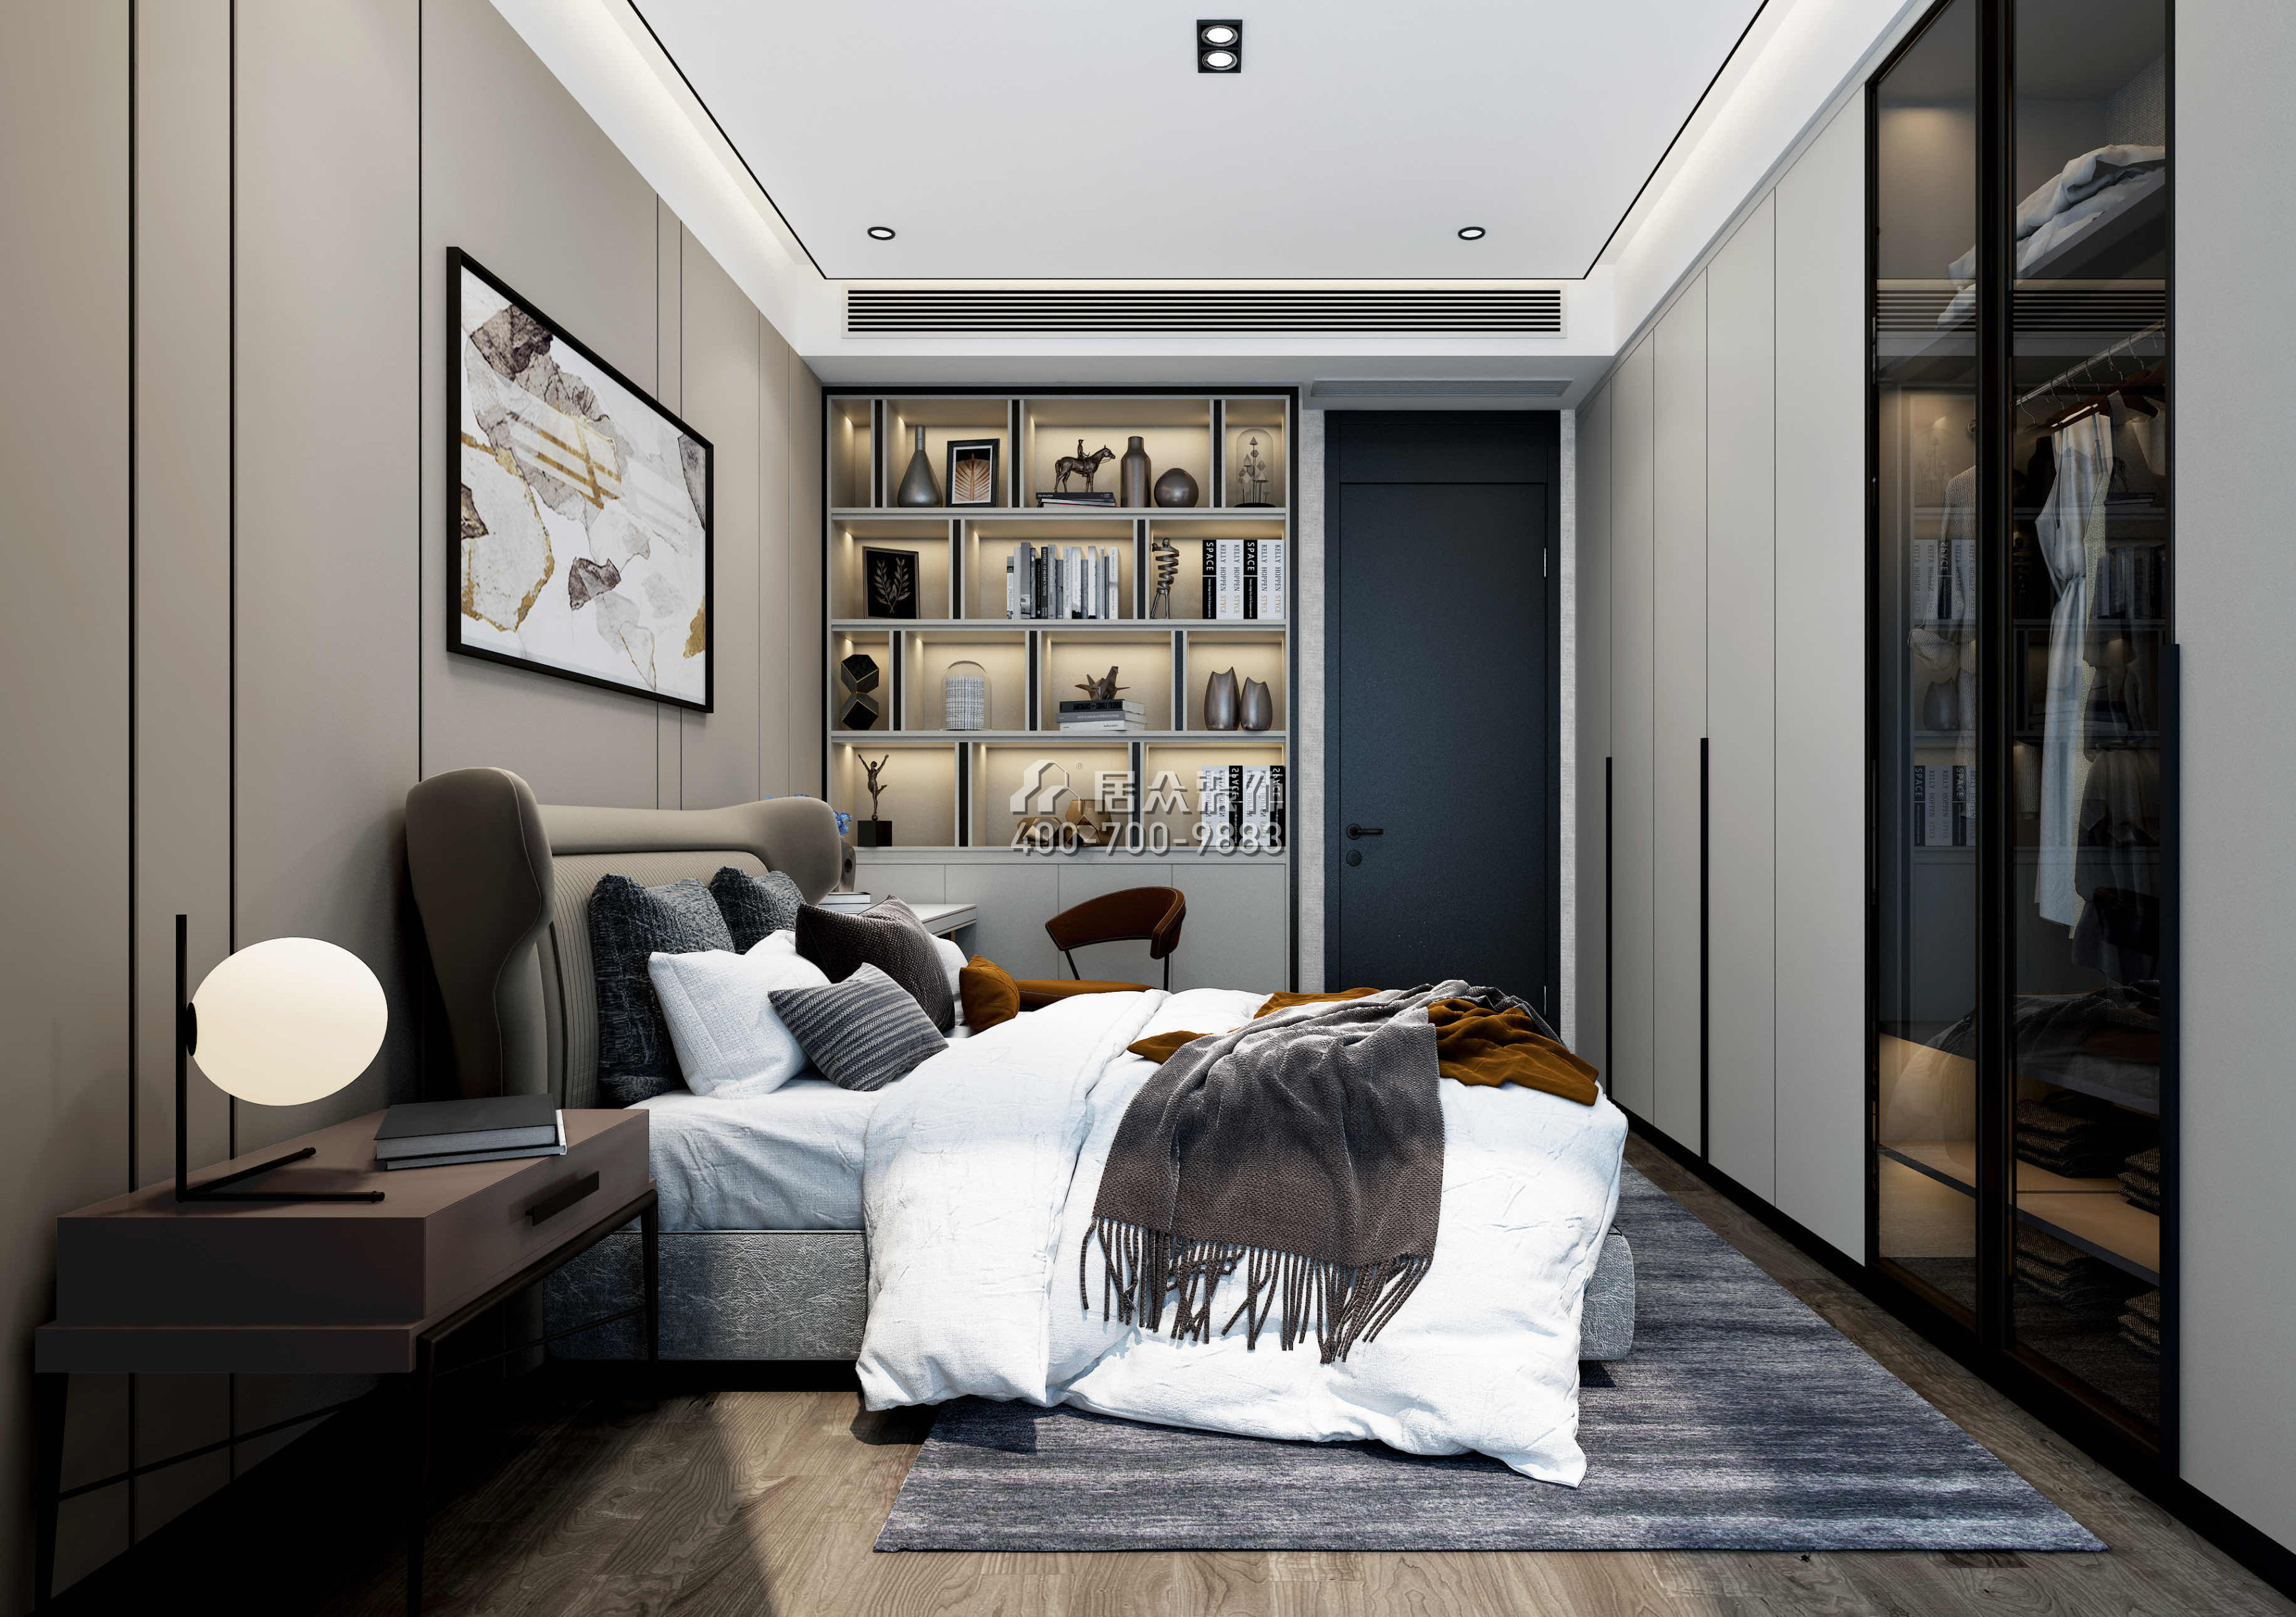 三湘海尚230平方米现代简约风格平层户型卧室装修效果图